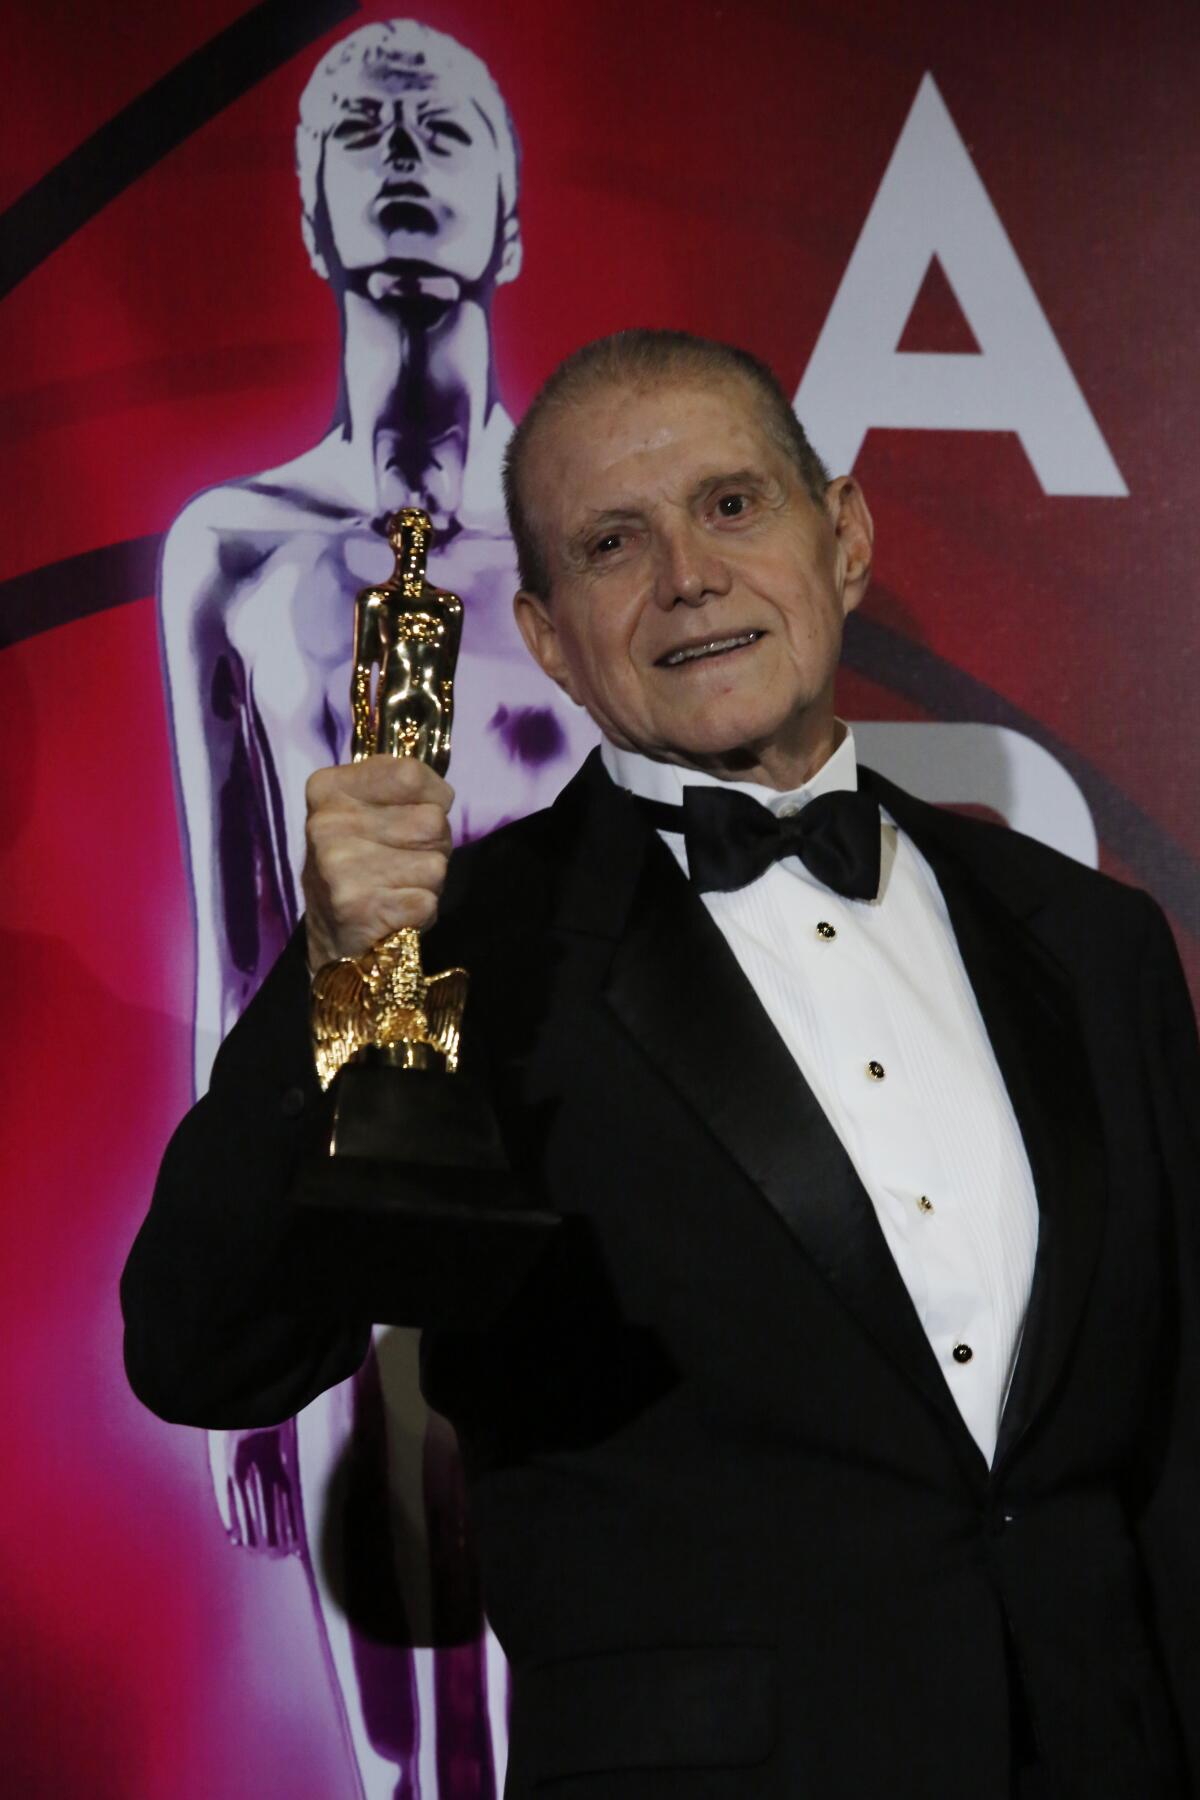 El actor mexicano Héctor Bonilla falleció a los 83 años tras perder la batalla contyra el cáncer de riñon.